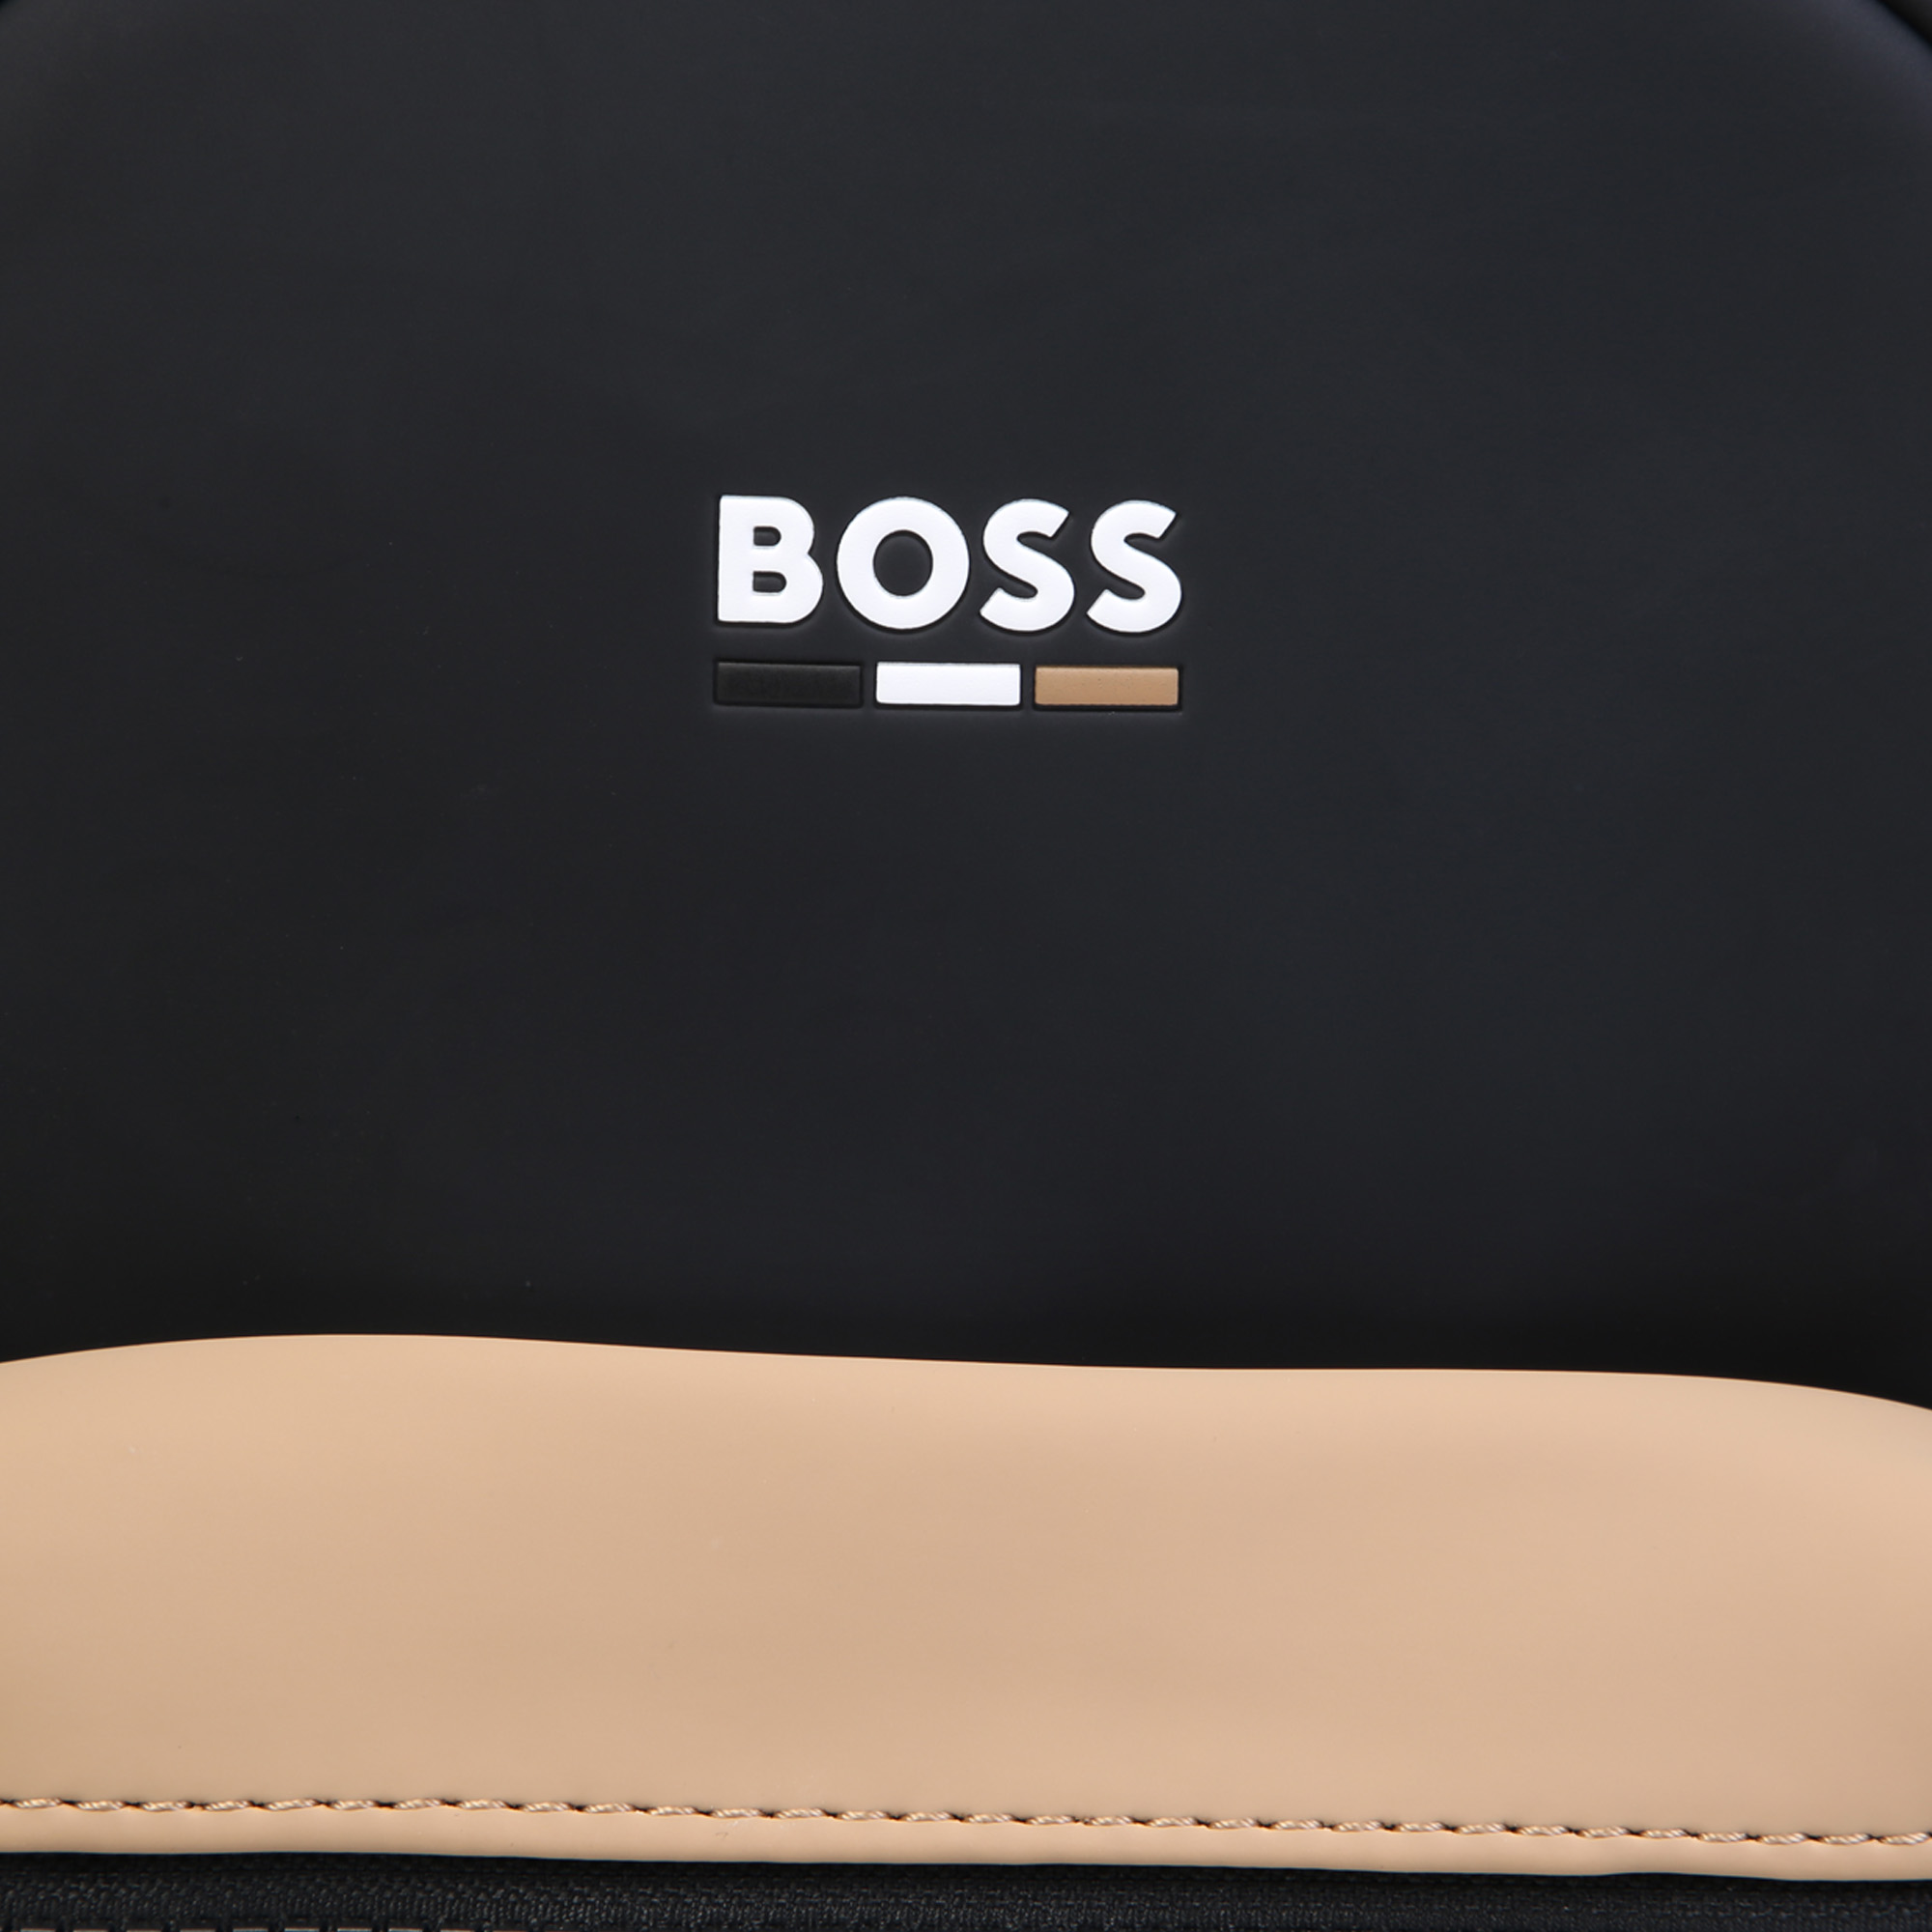 Rucksack mit Logo BOSS Für JUNGE